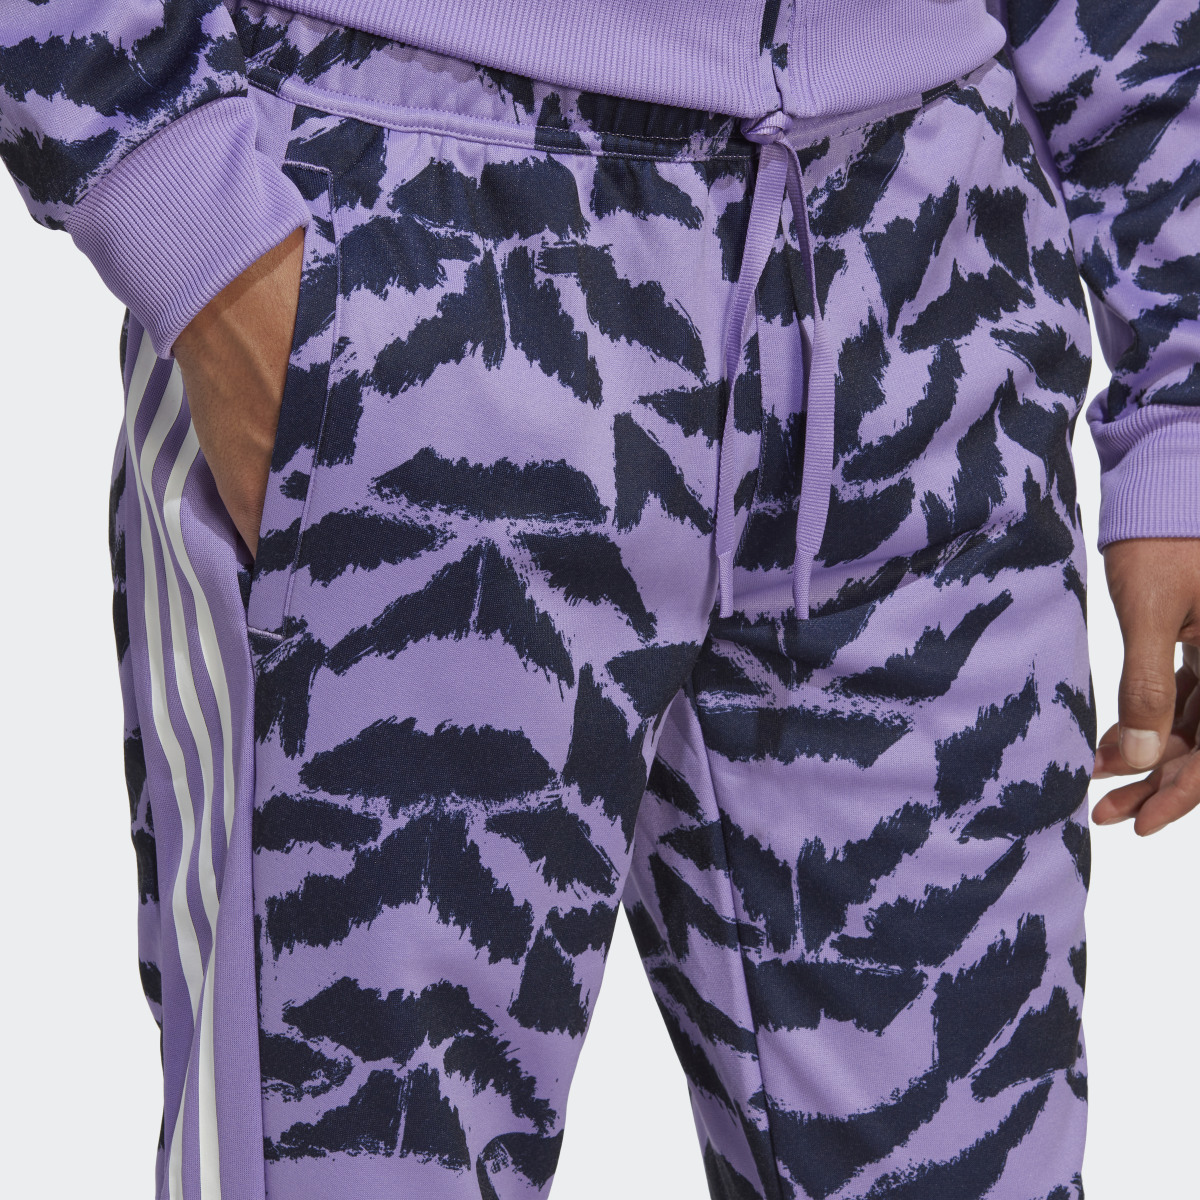 Adidas Pantalon de survêtement Tiro Suit-Up Lifestyle. 7